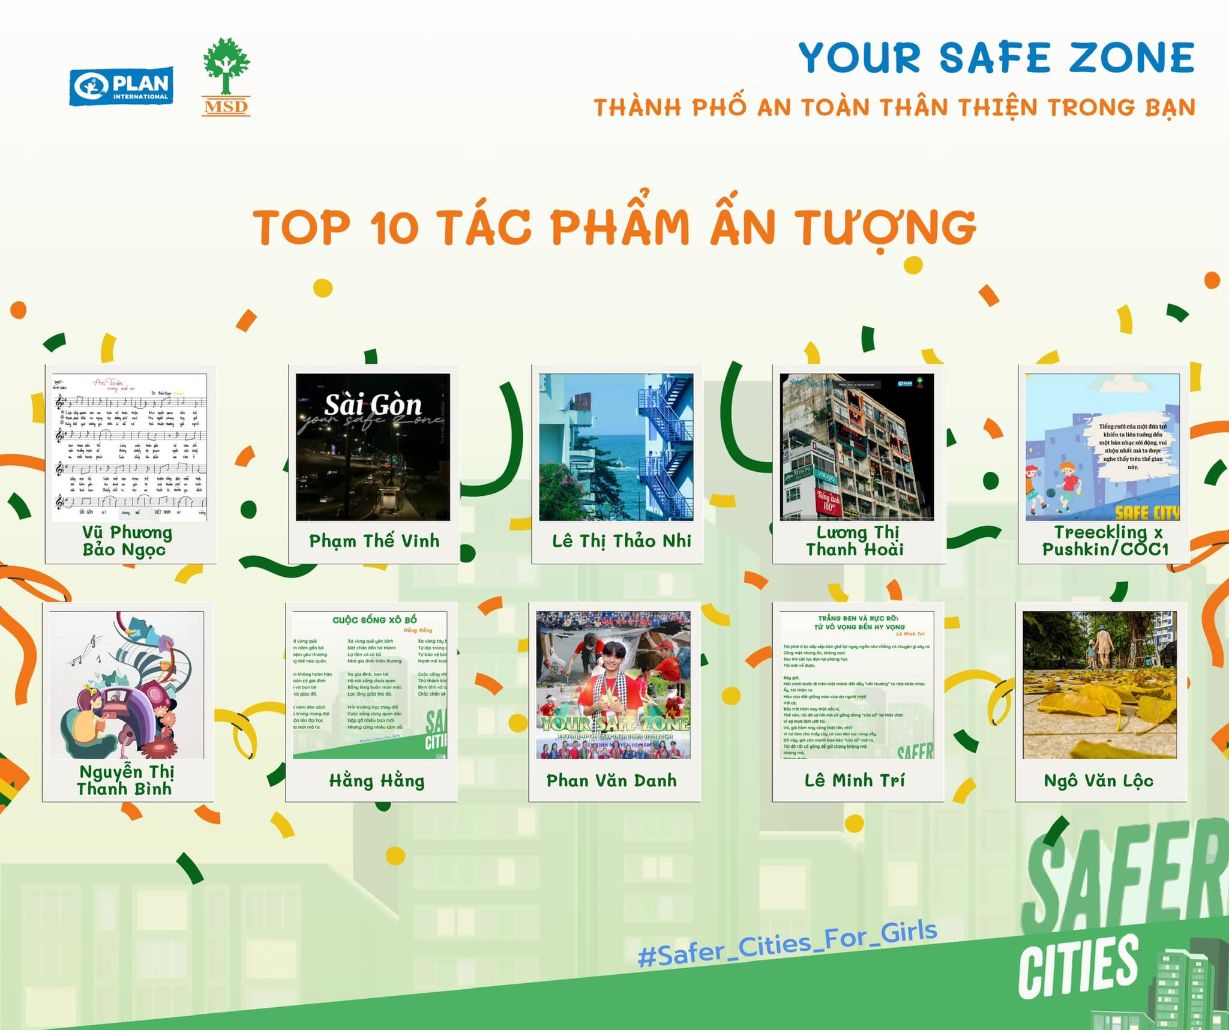 Your Safe Zone 1 Công bố kết quả cuộc thi Your Safe Zone – Thành phố An toàn và Thân thiện trong bạn